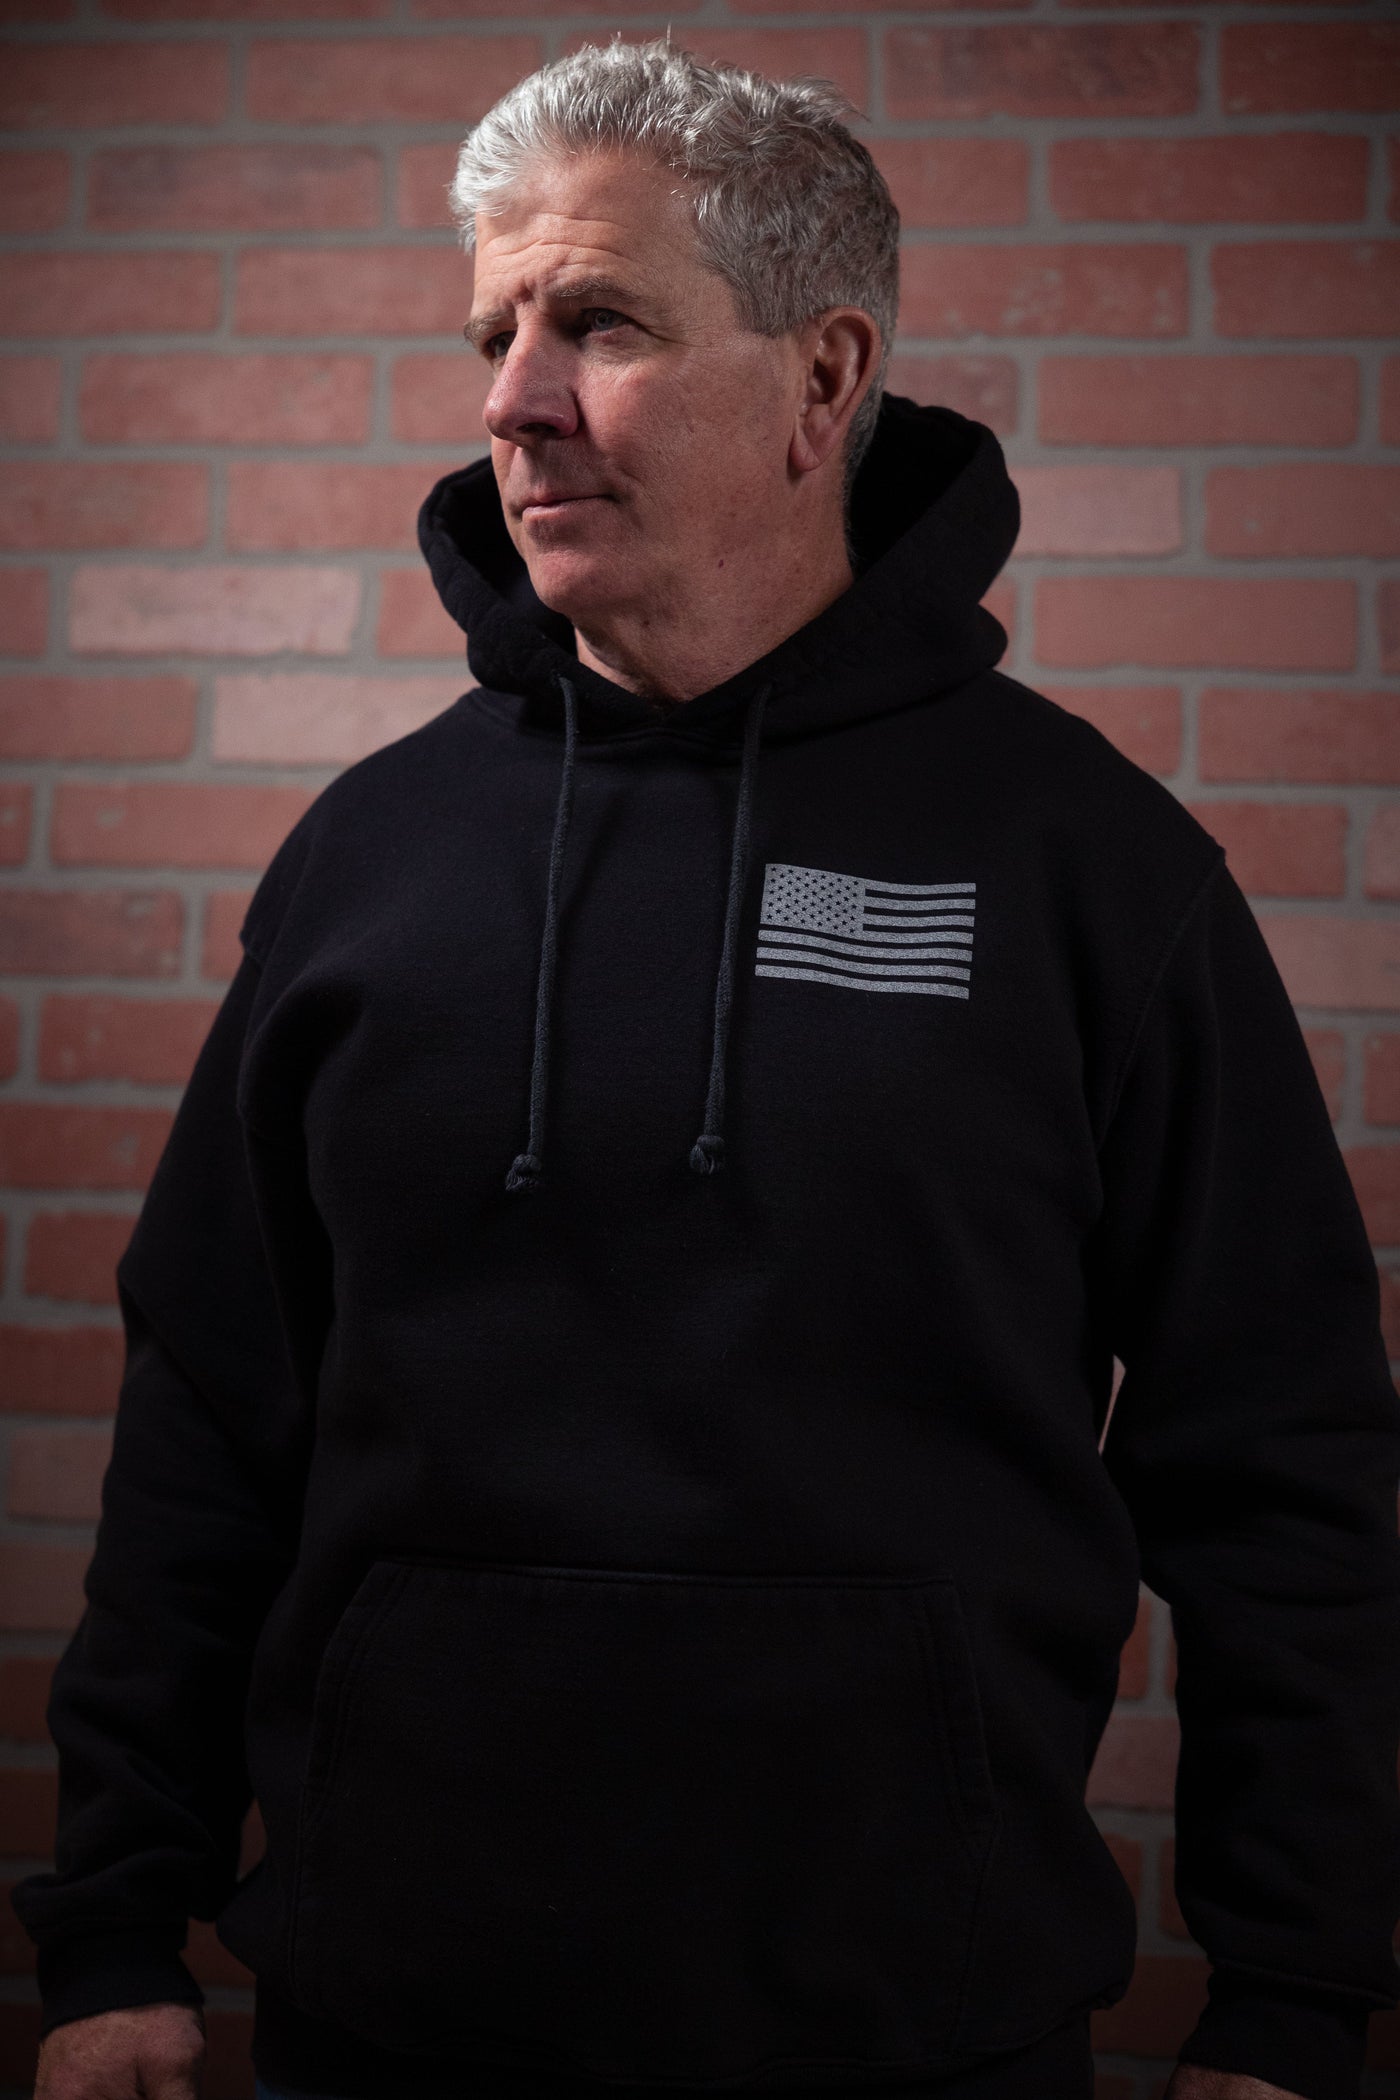 American Flag - Pullover Hoodie Sweatshirt (Black)